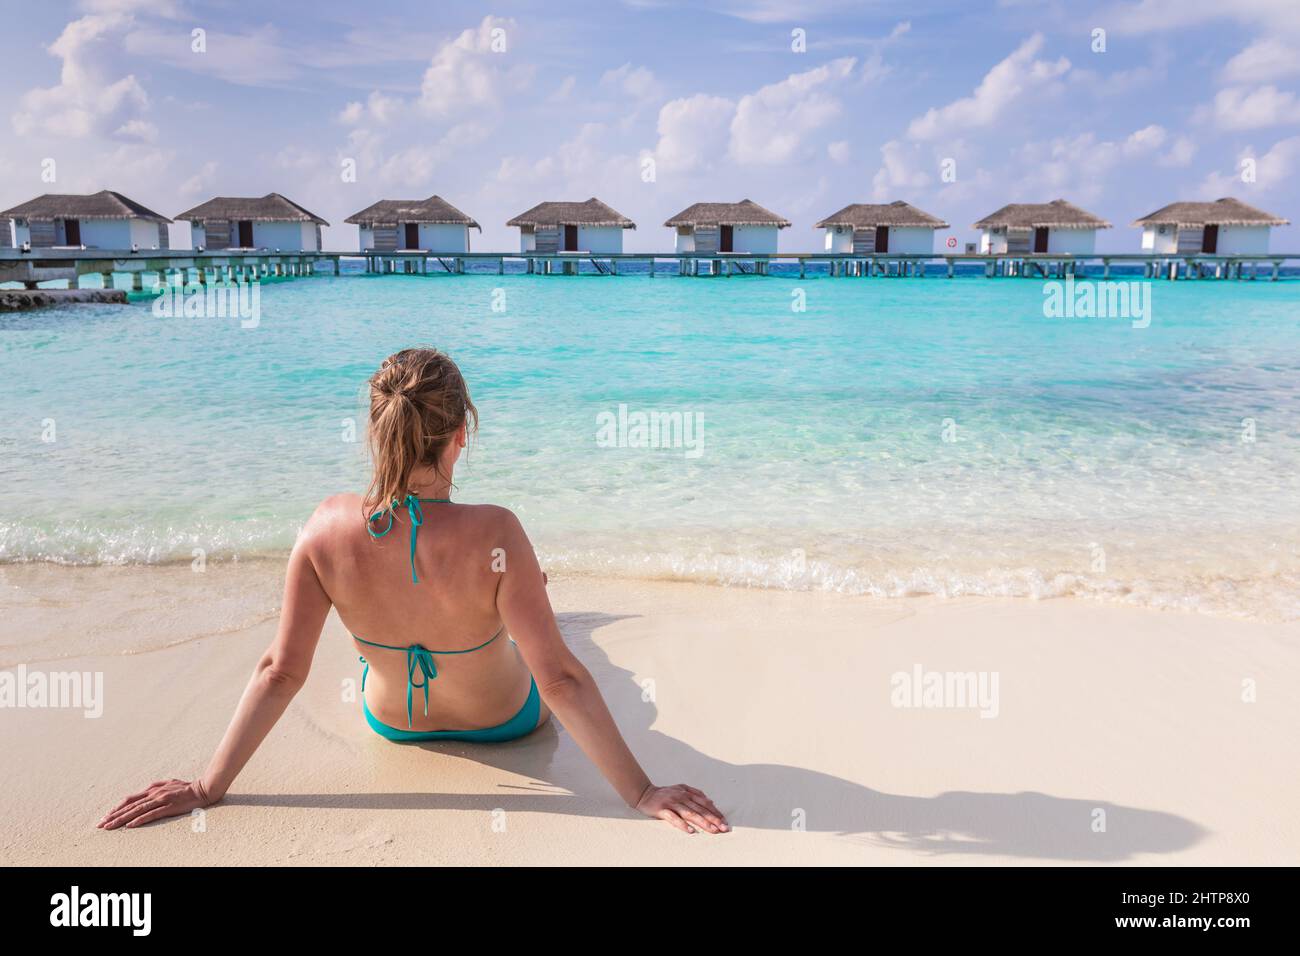 Vacaciones en la playa con mujer sol bañándose en arena blanca en un lujoso hotel resort en Maldivas con villas sobre el agua, aguas turquesas y azul Foto de stock